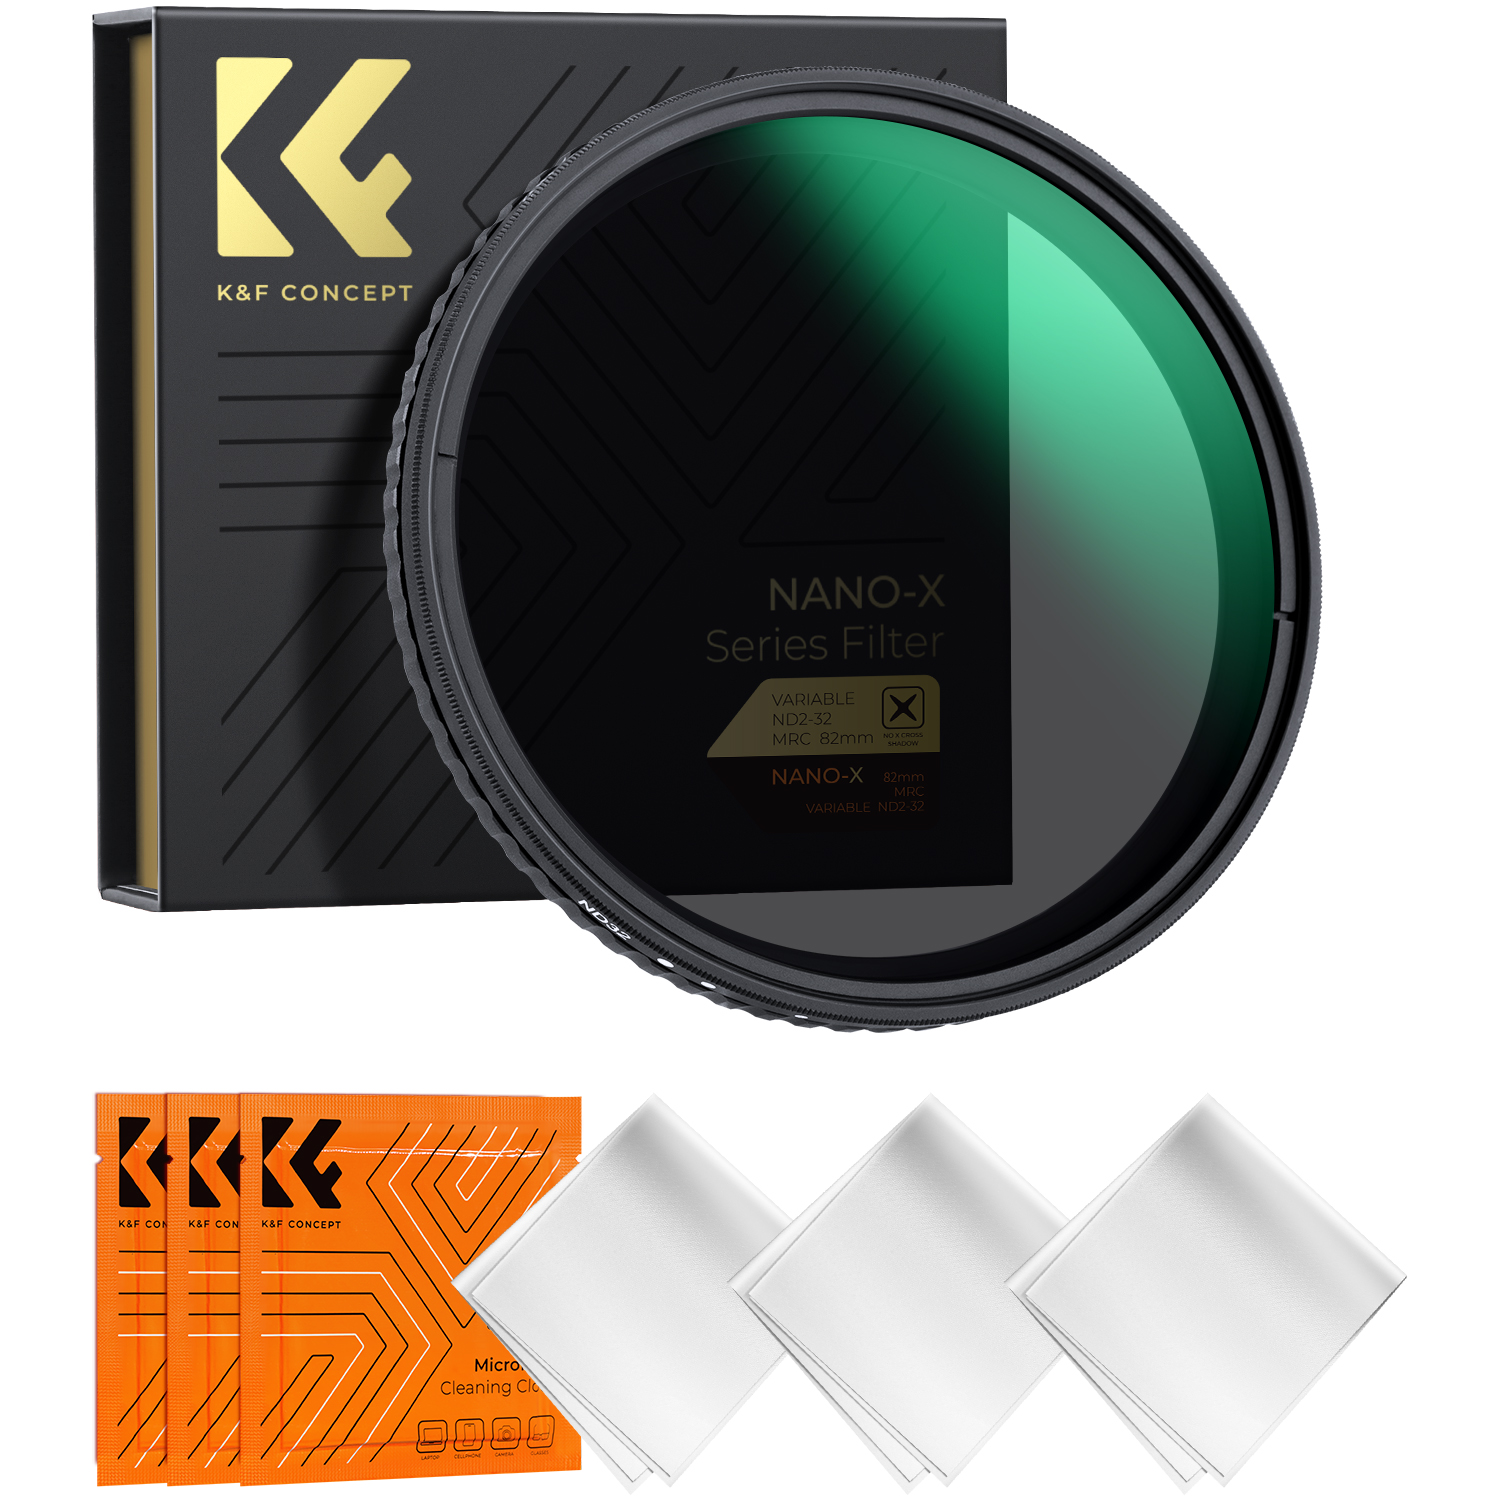 K&F Concept 37 40.5 43 46 49 52 58mm Fader ND Filter Neutral Density